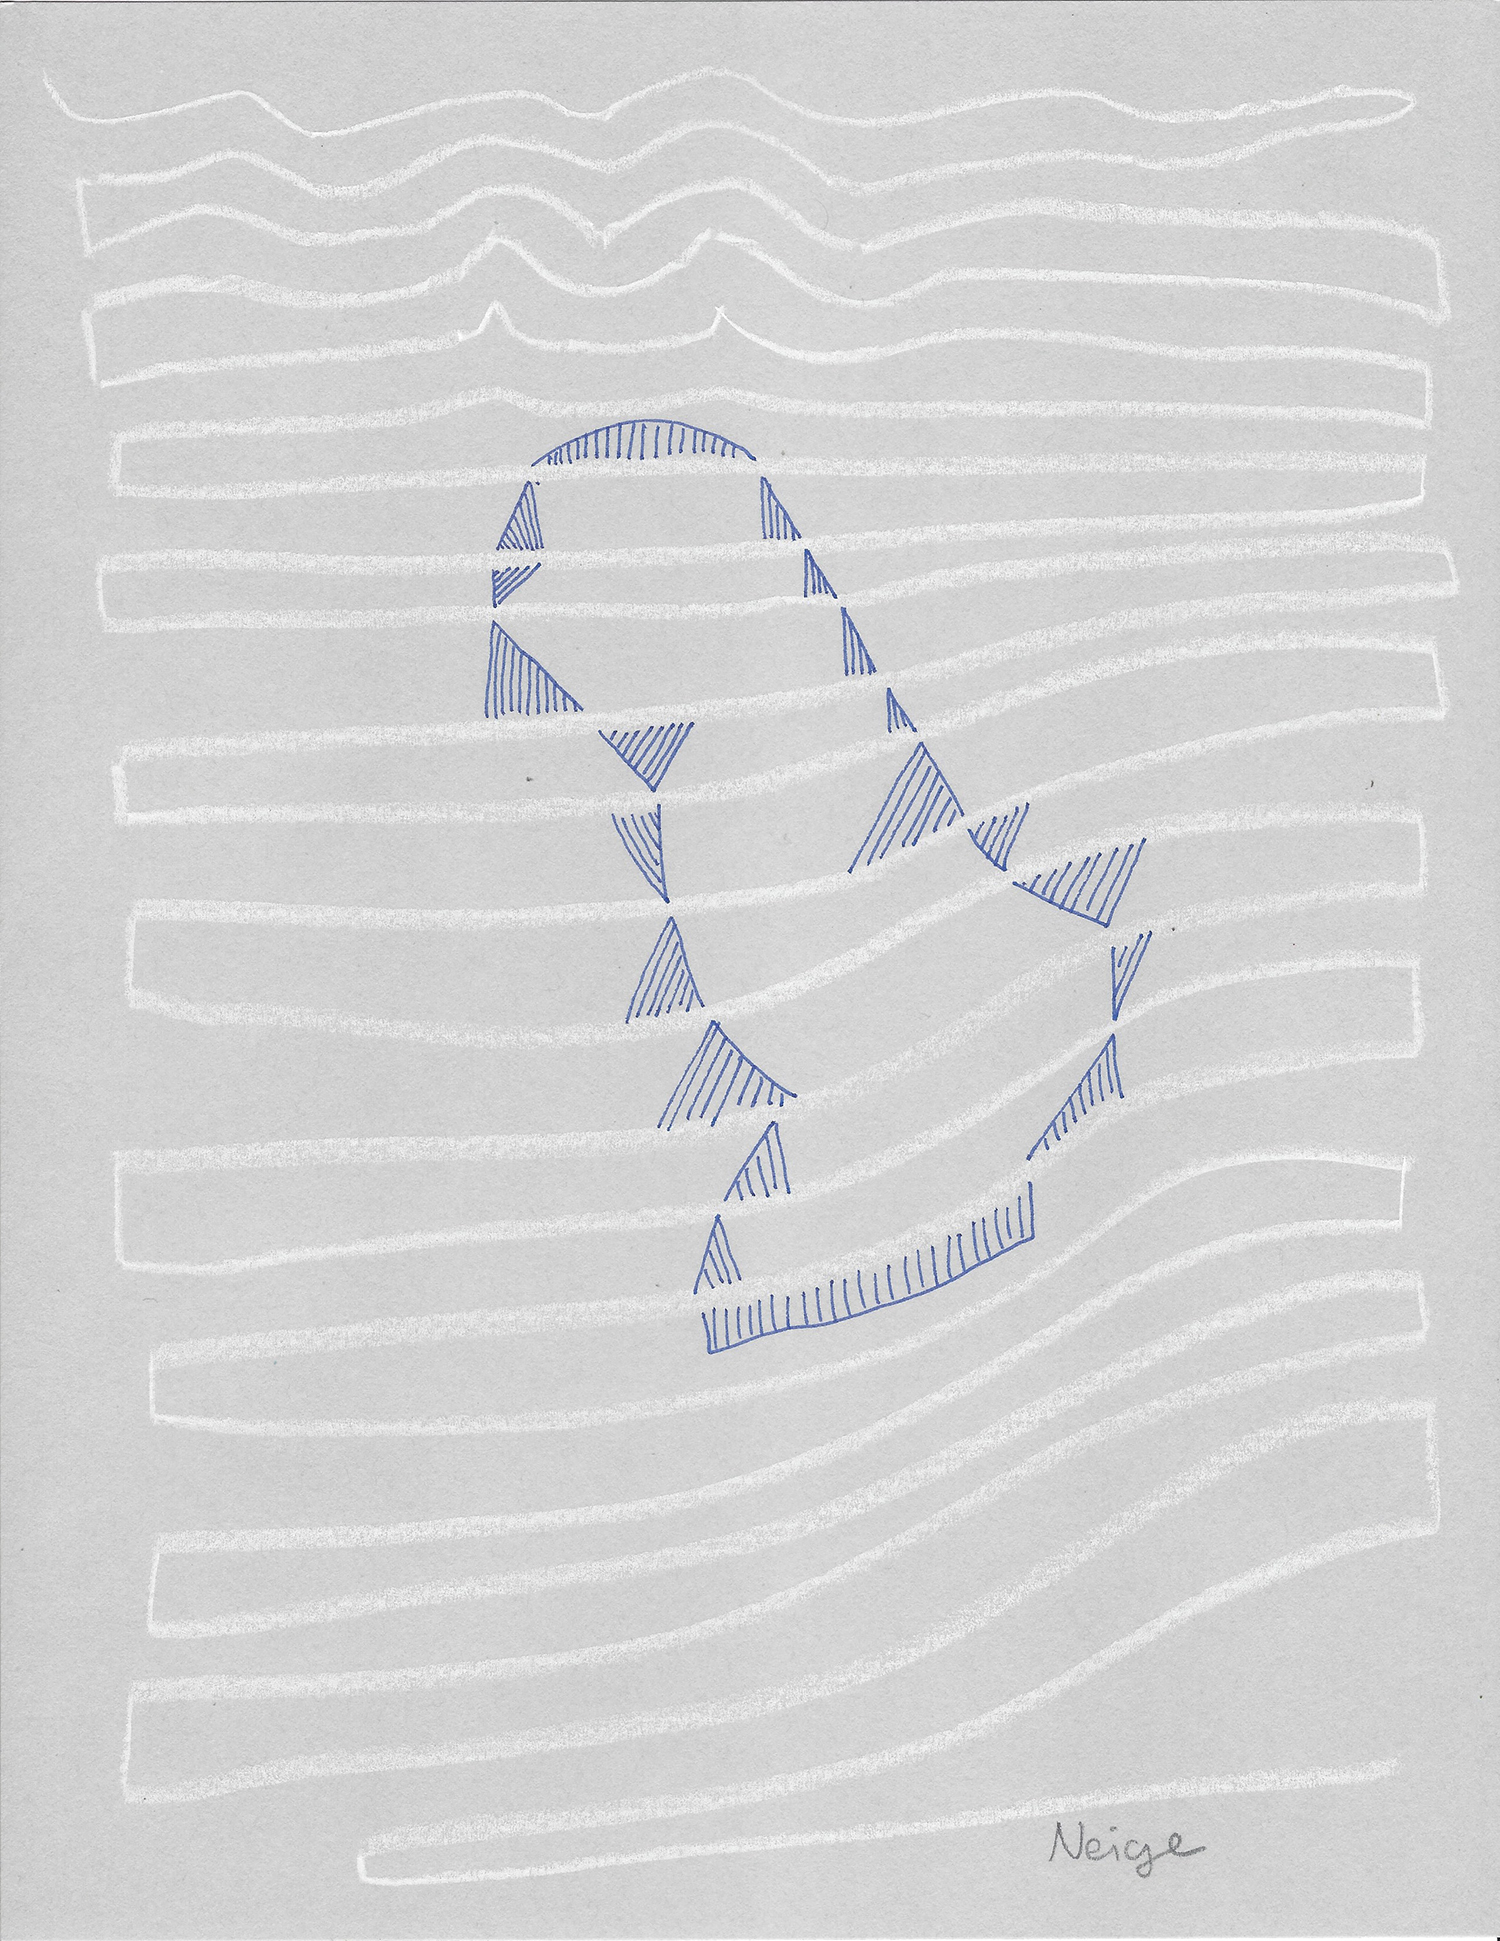    Neige  , 2017, tinta y lápiz sobre papel, 28 x 22 cm. 